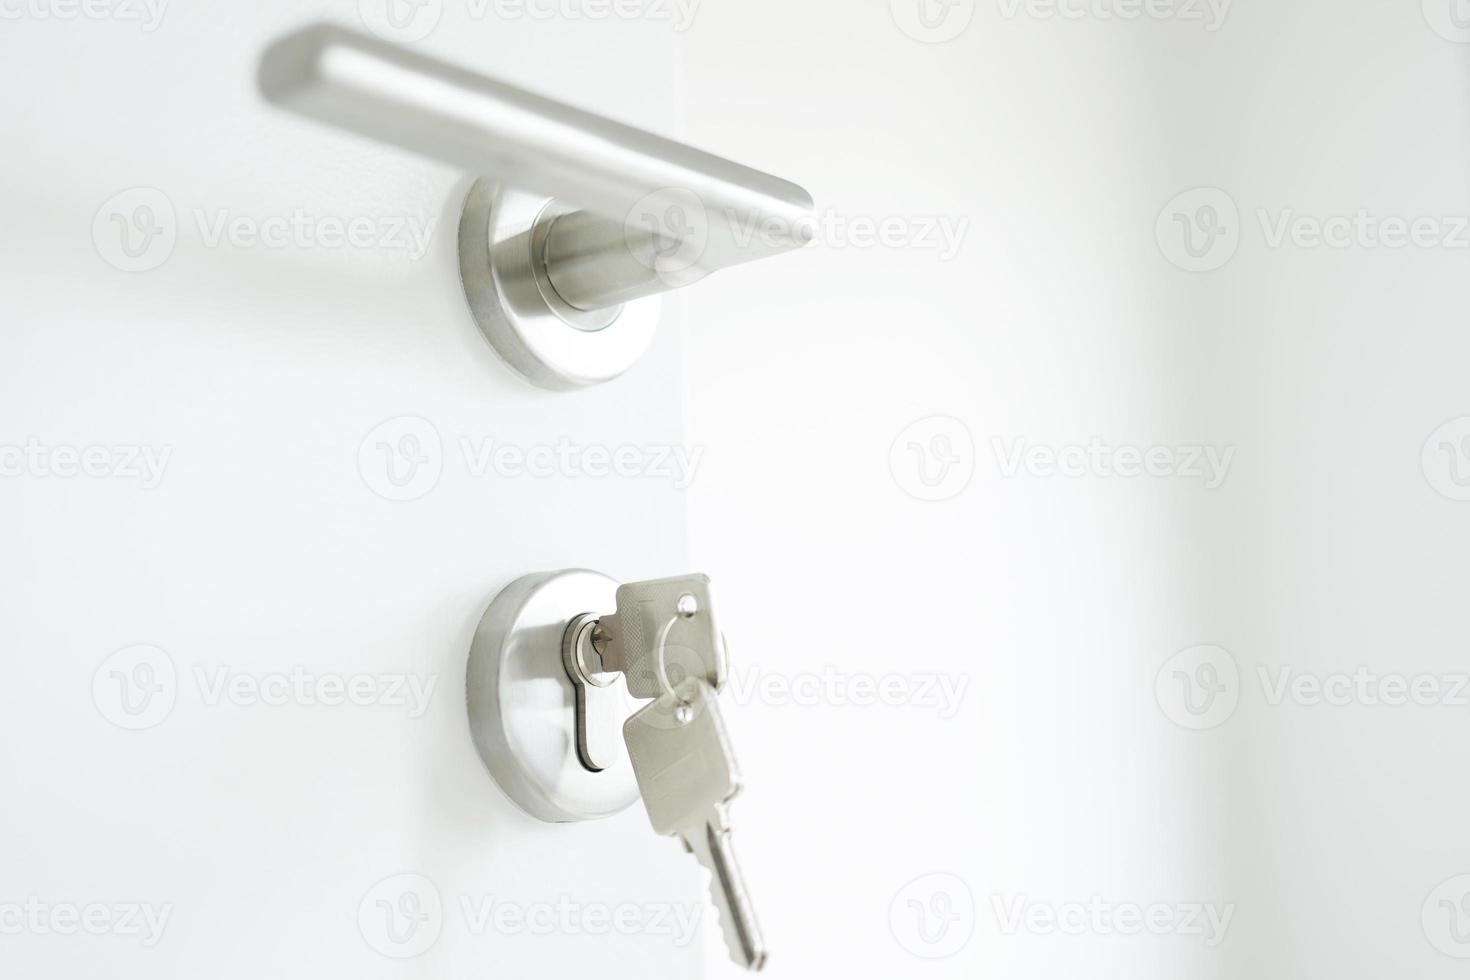 chave de casa no chaveiro em forma de casa chaveiro de prata na fechadura de uma porta. conceito para comprar habitação e apartamento de agente imobiliário. foto